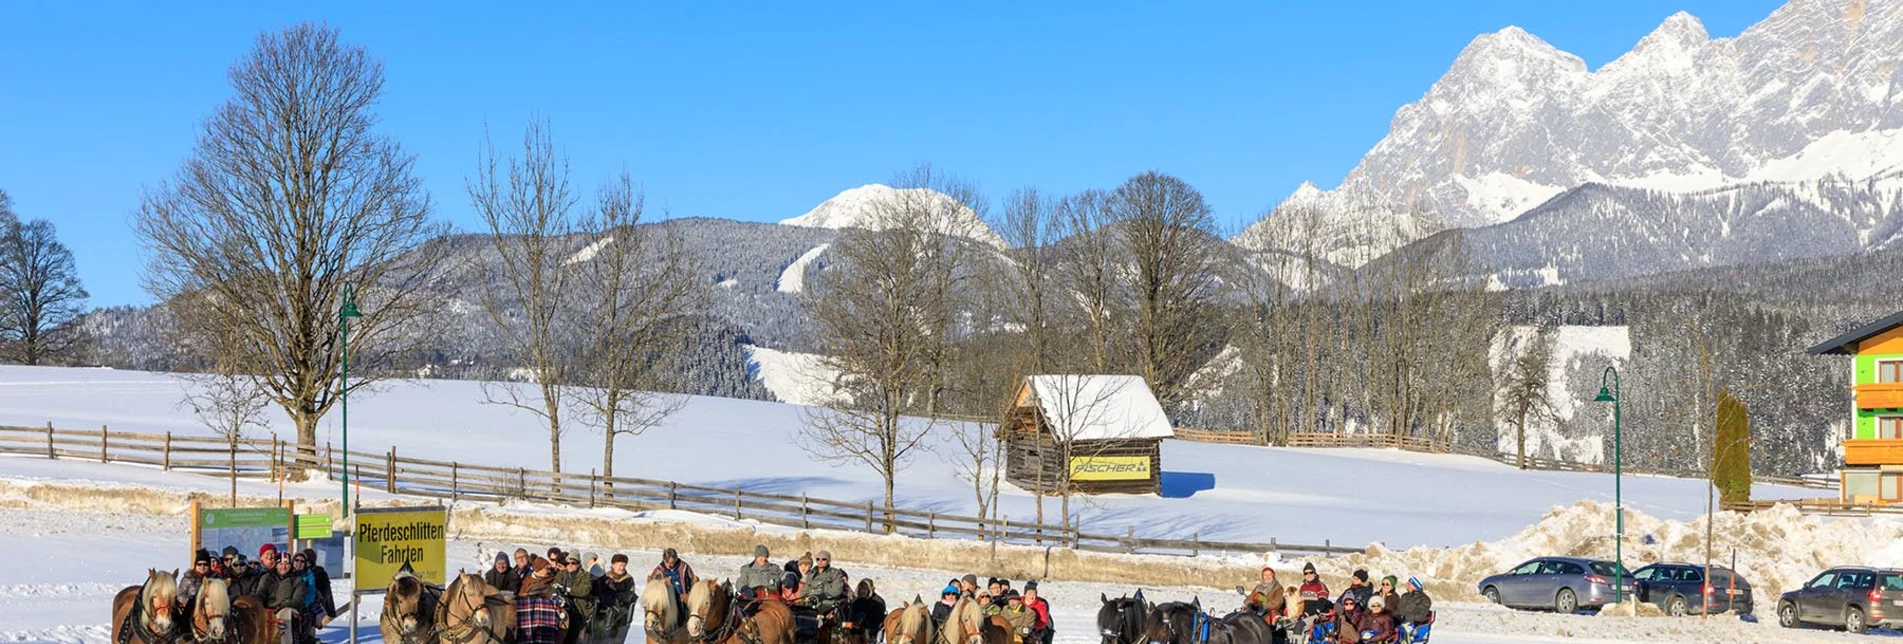 Pferdeschlitten Große Tälerfahrt ins Untertal - Touren-Impression #1 | © Tourismusverband Schladming - Martin Huber